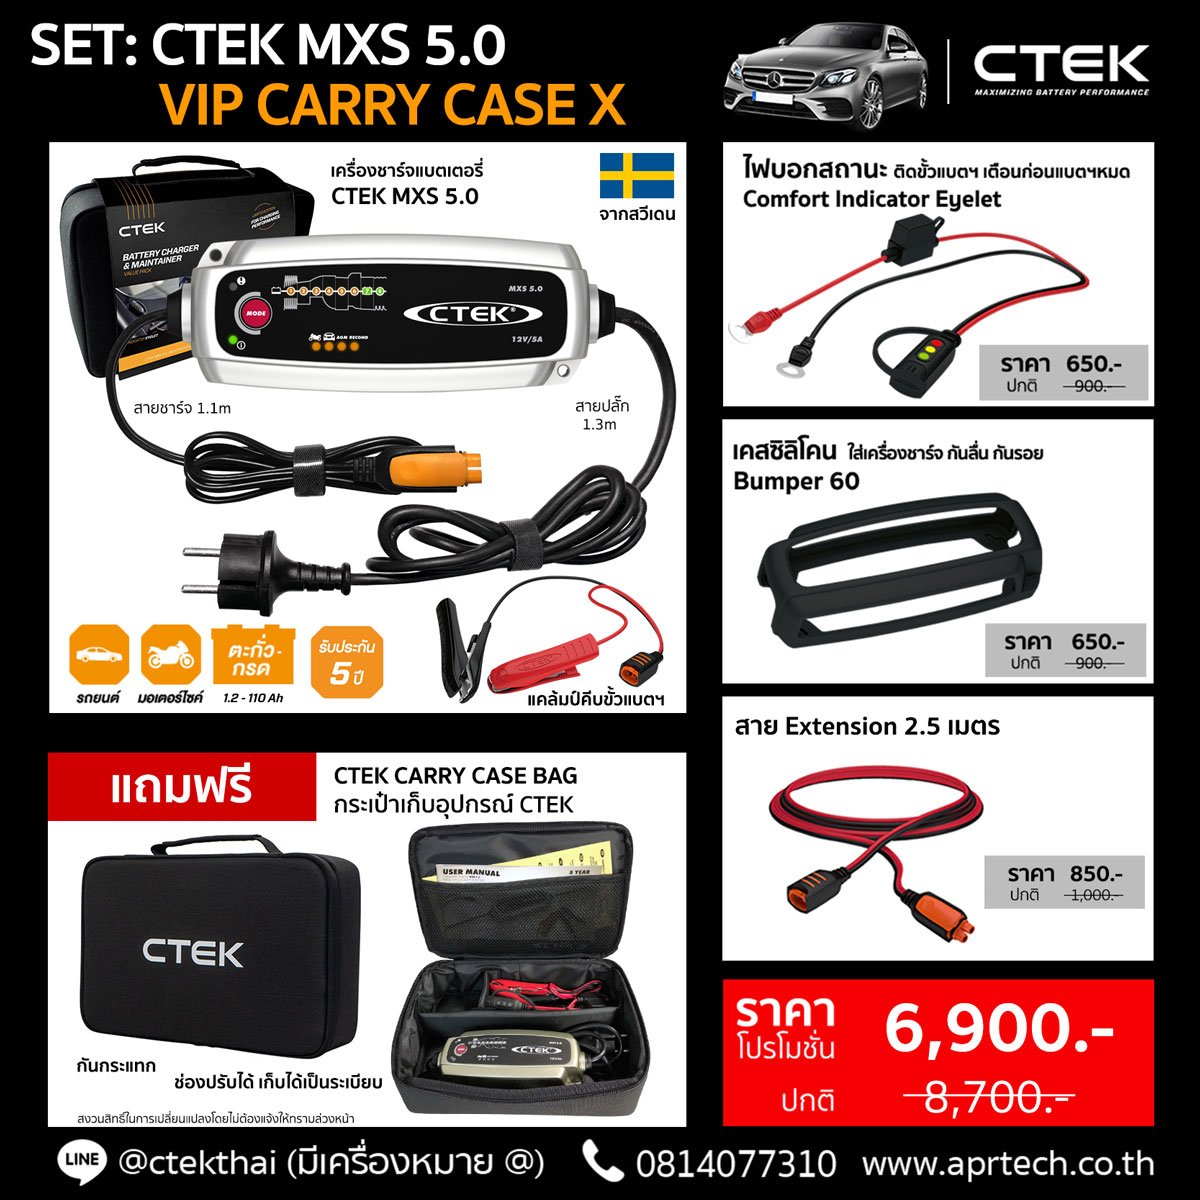 SET CTEK MXS 5.0 VIP CARRY CASE X (CTEK MXS 5.0 + Indicator Eyelet + Bumper + Extension 2.5)